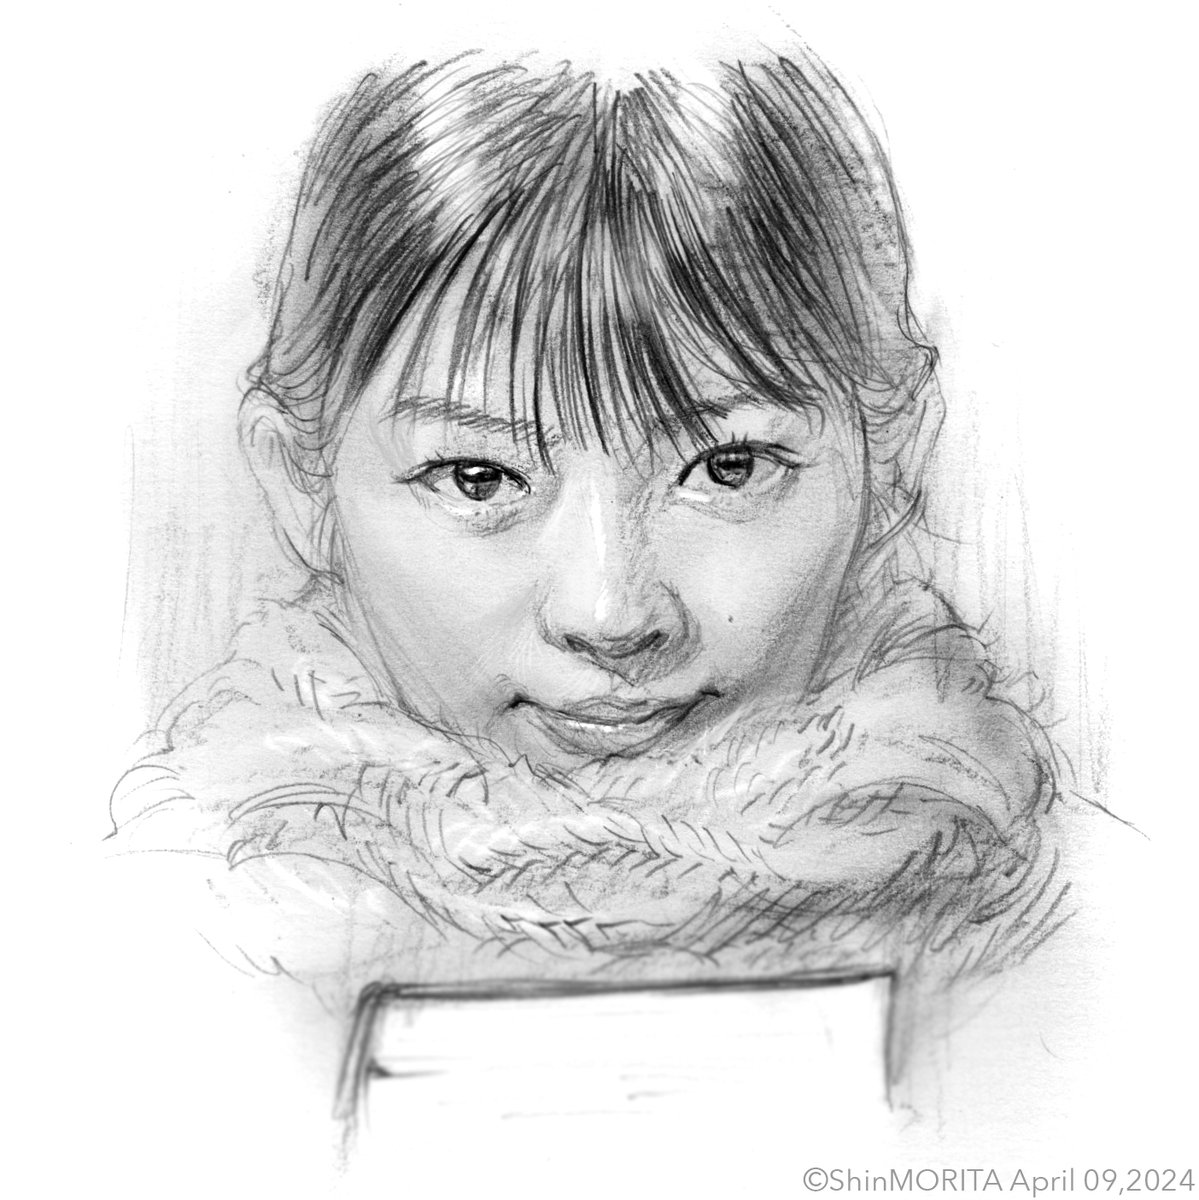 寅子さんを描きました。 
#伊藤沙莉 さん 
#虎に翼 #トラつば #トラつば絵
@asadora_nhk @SaiRi_iTo